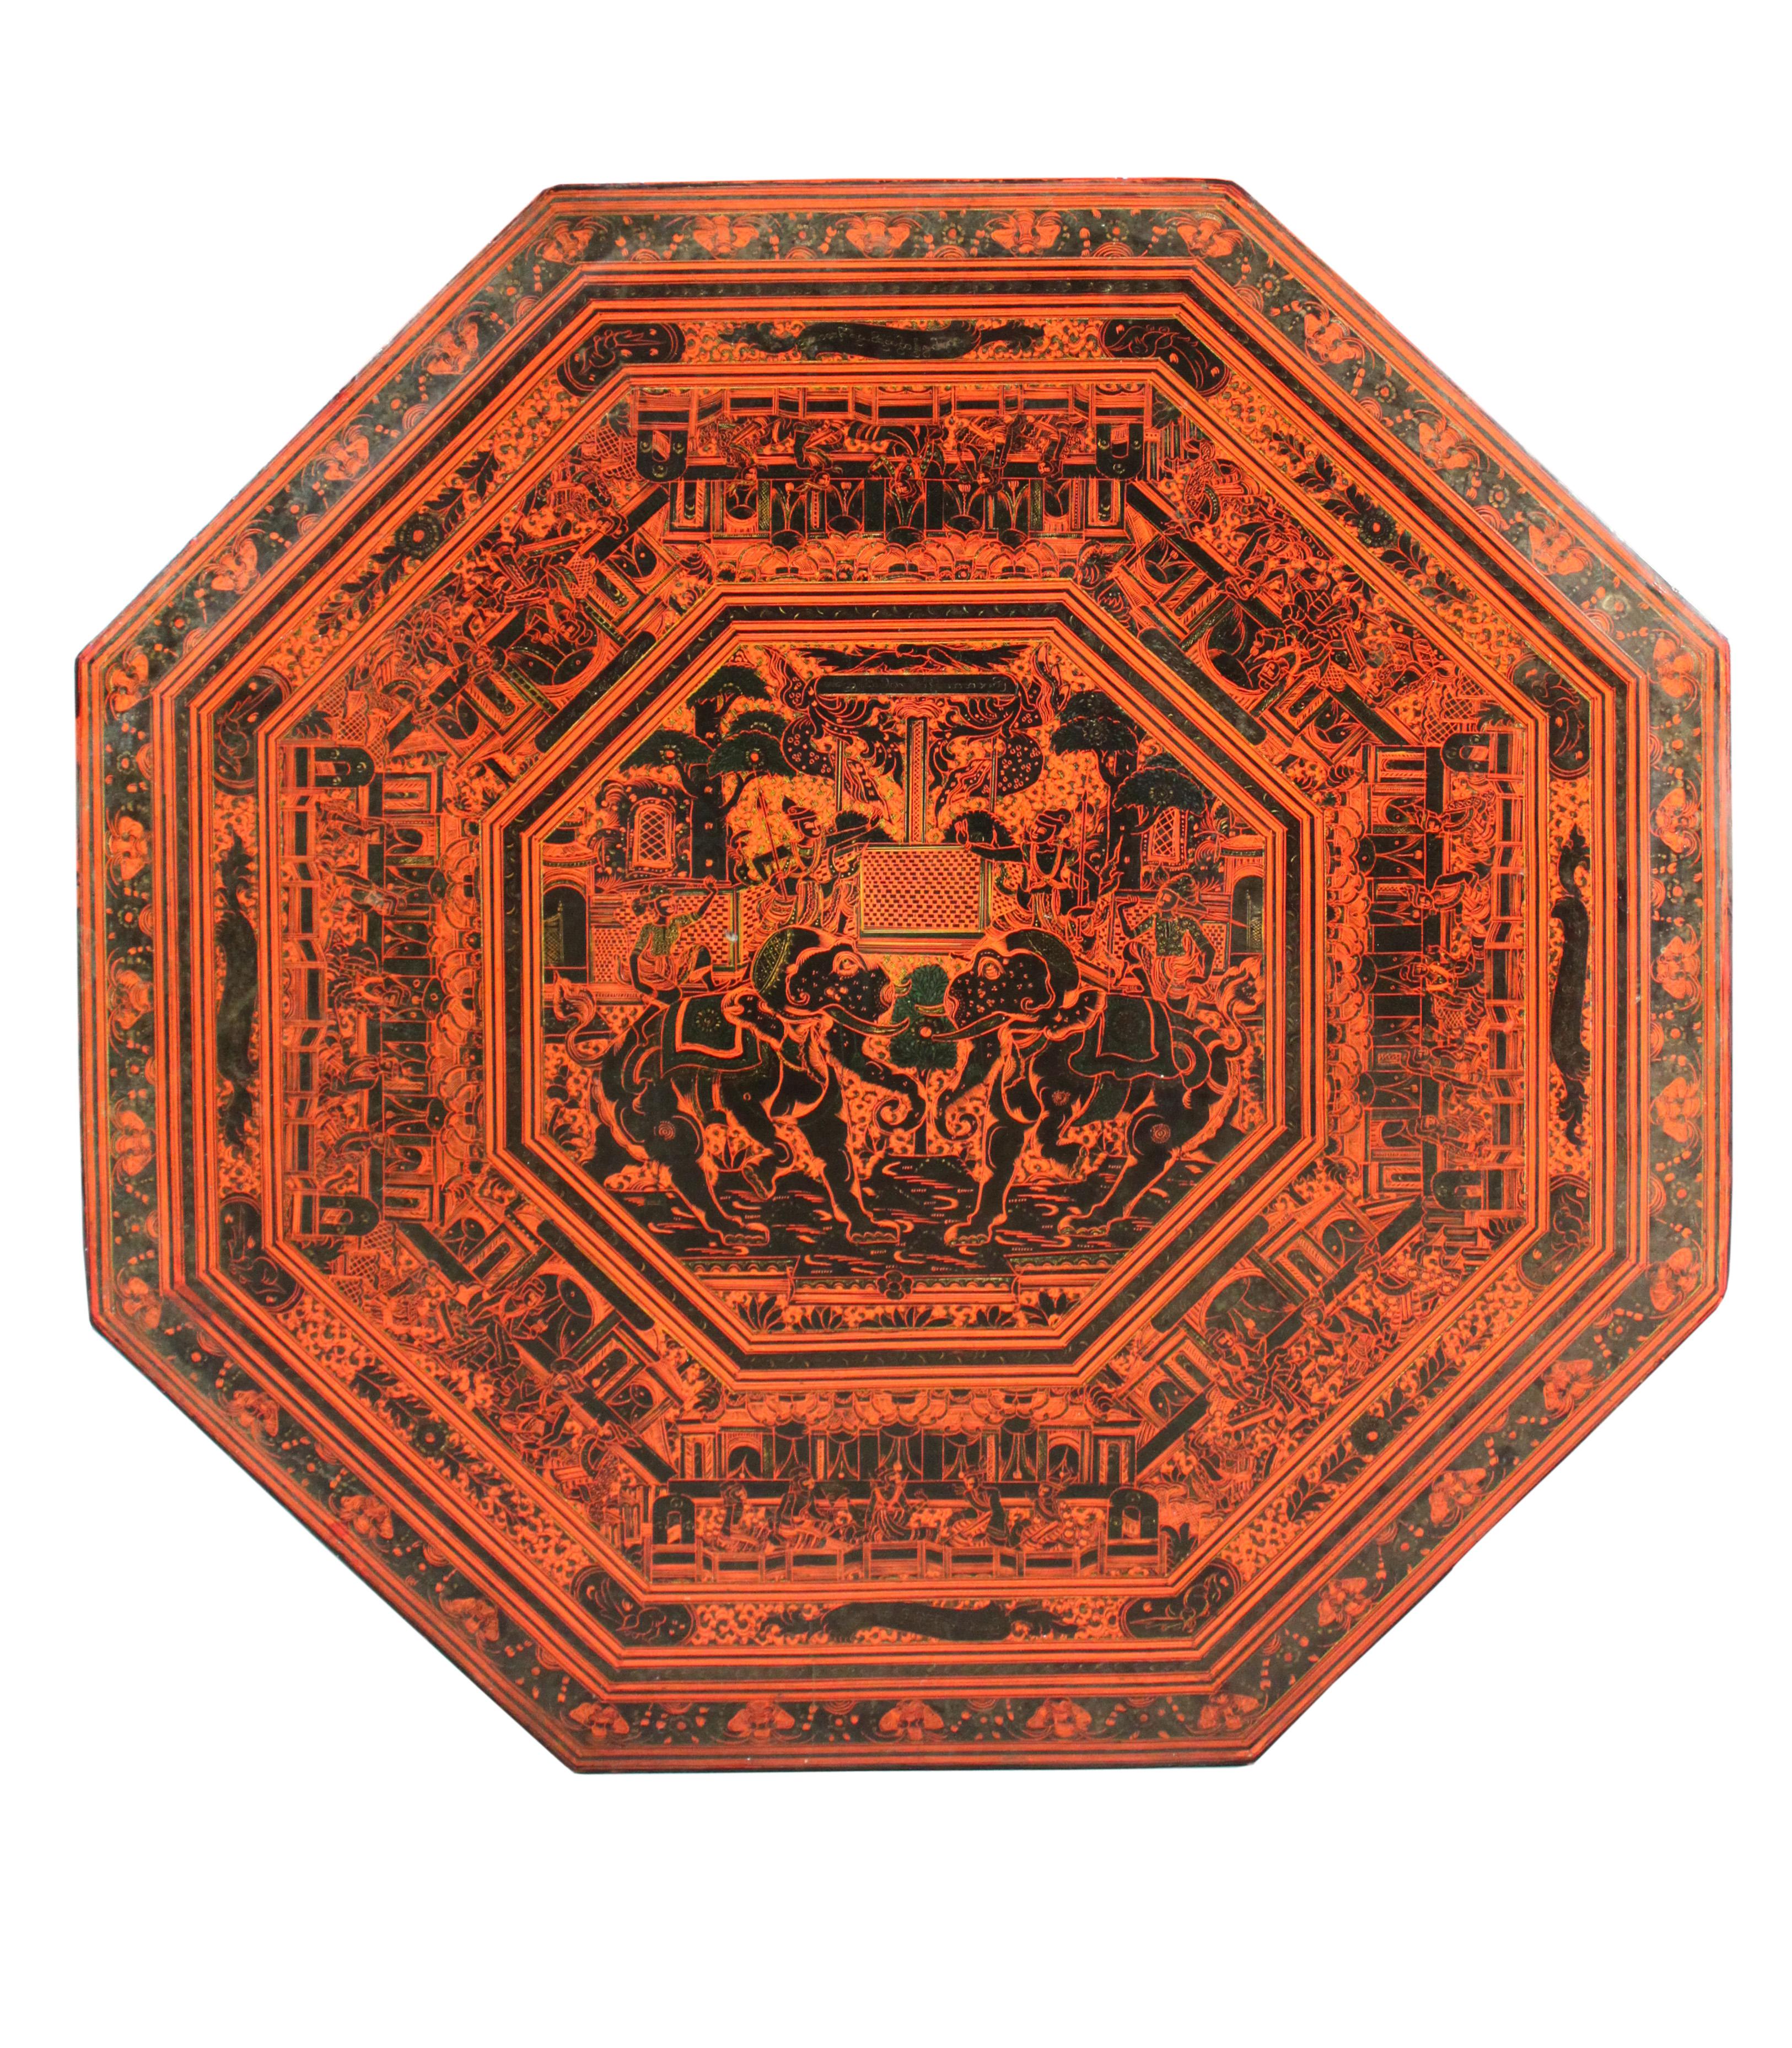 Table en laque rouge indienne de taille inhabituelle ; le plateau octogonal est décoré d'éléphants cabrés entourés d'une frise de personnages et la base présente des détails de lions, d'éléphants et de divers personnages.
Le dessus se retire et la